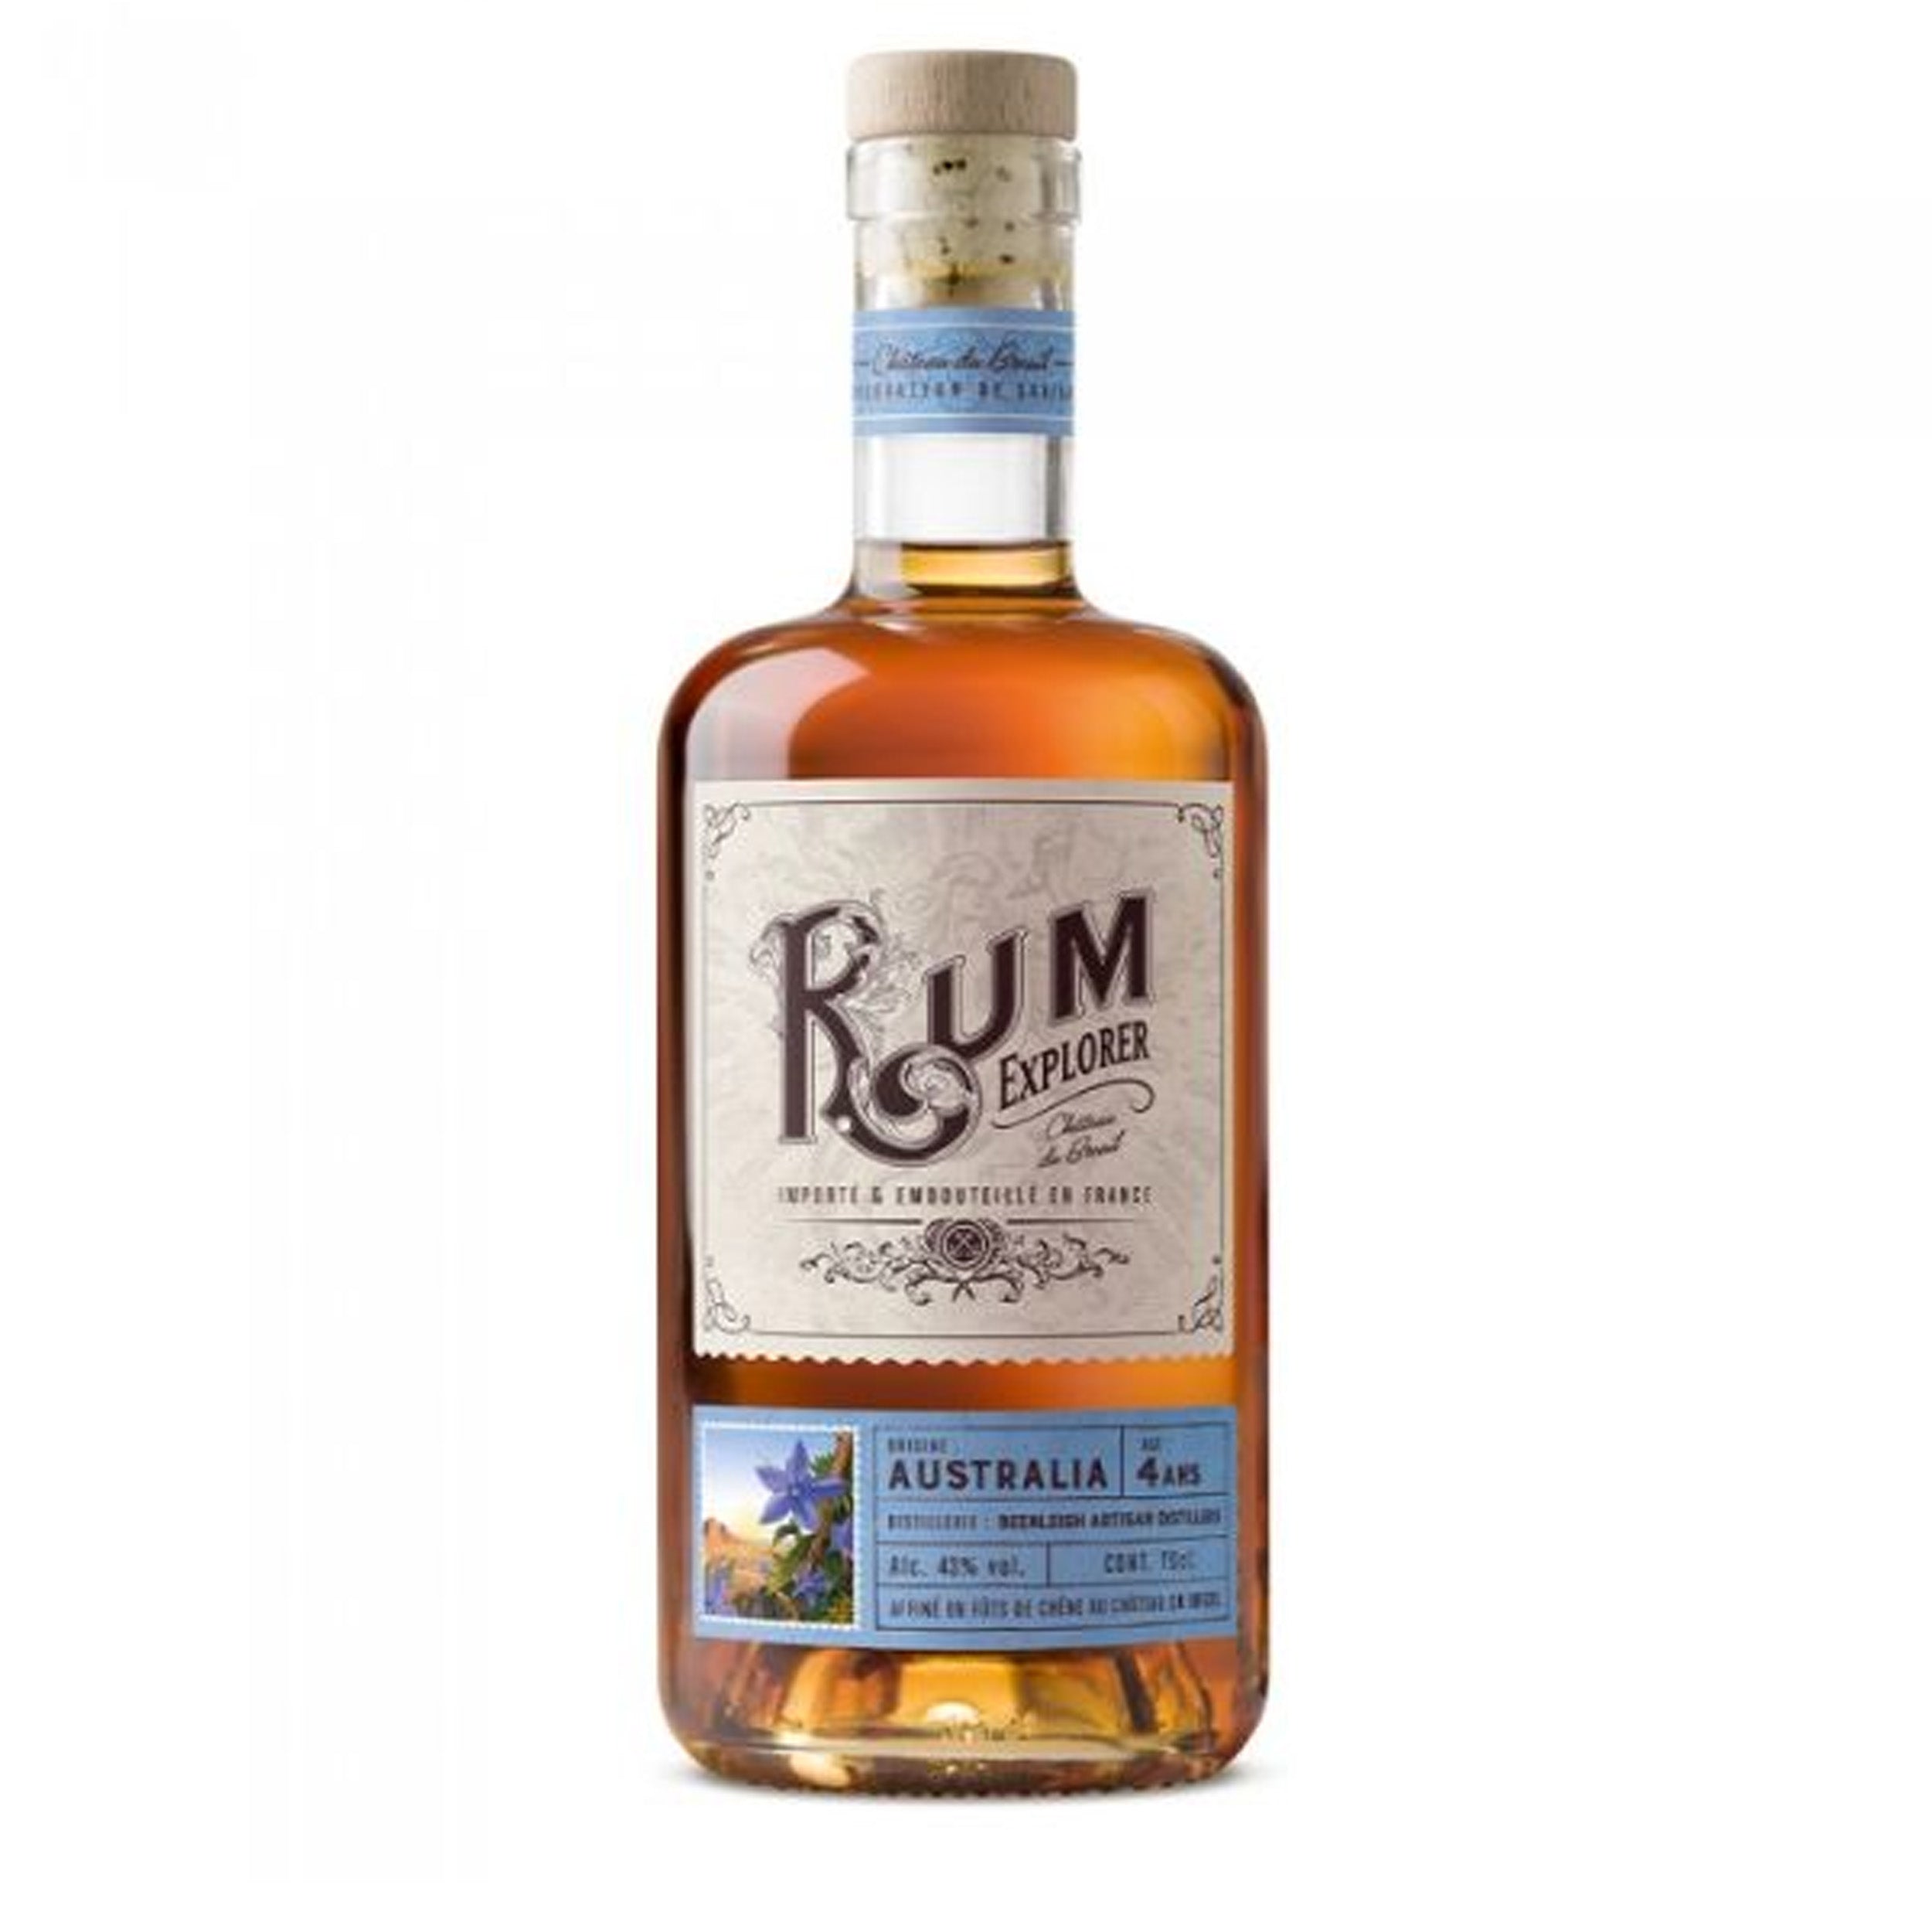 Rum Explorer - Austrailia